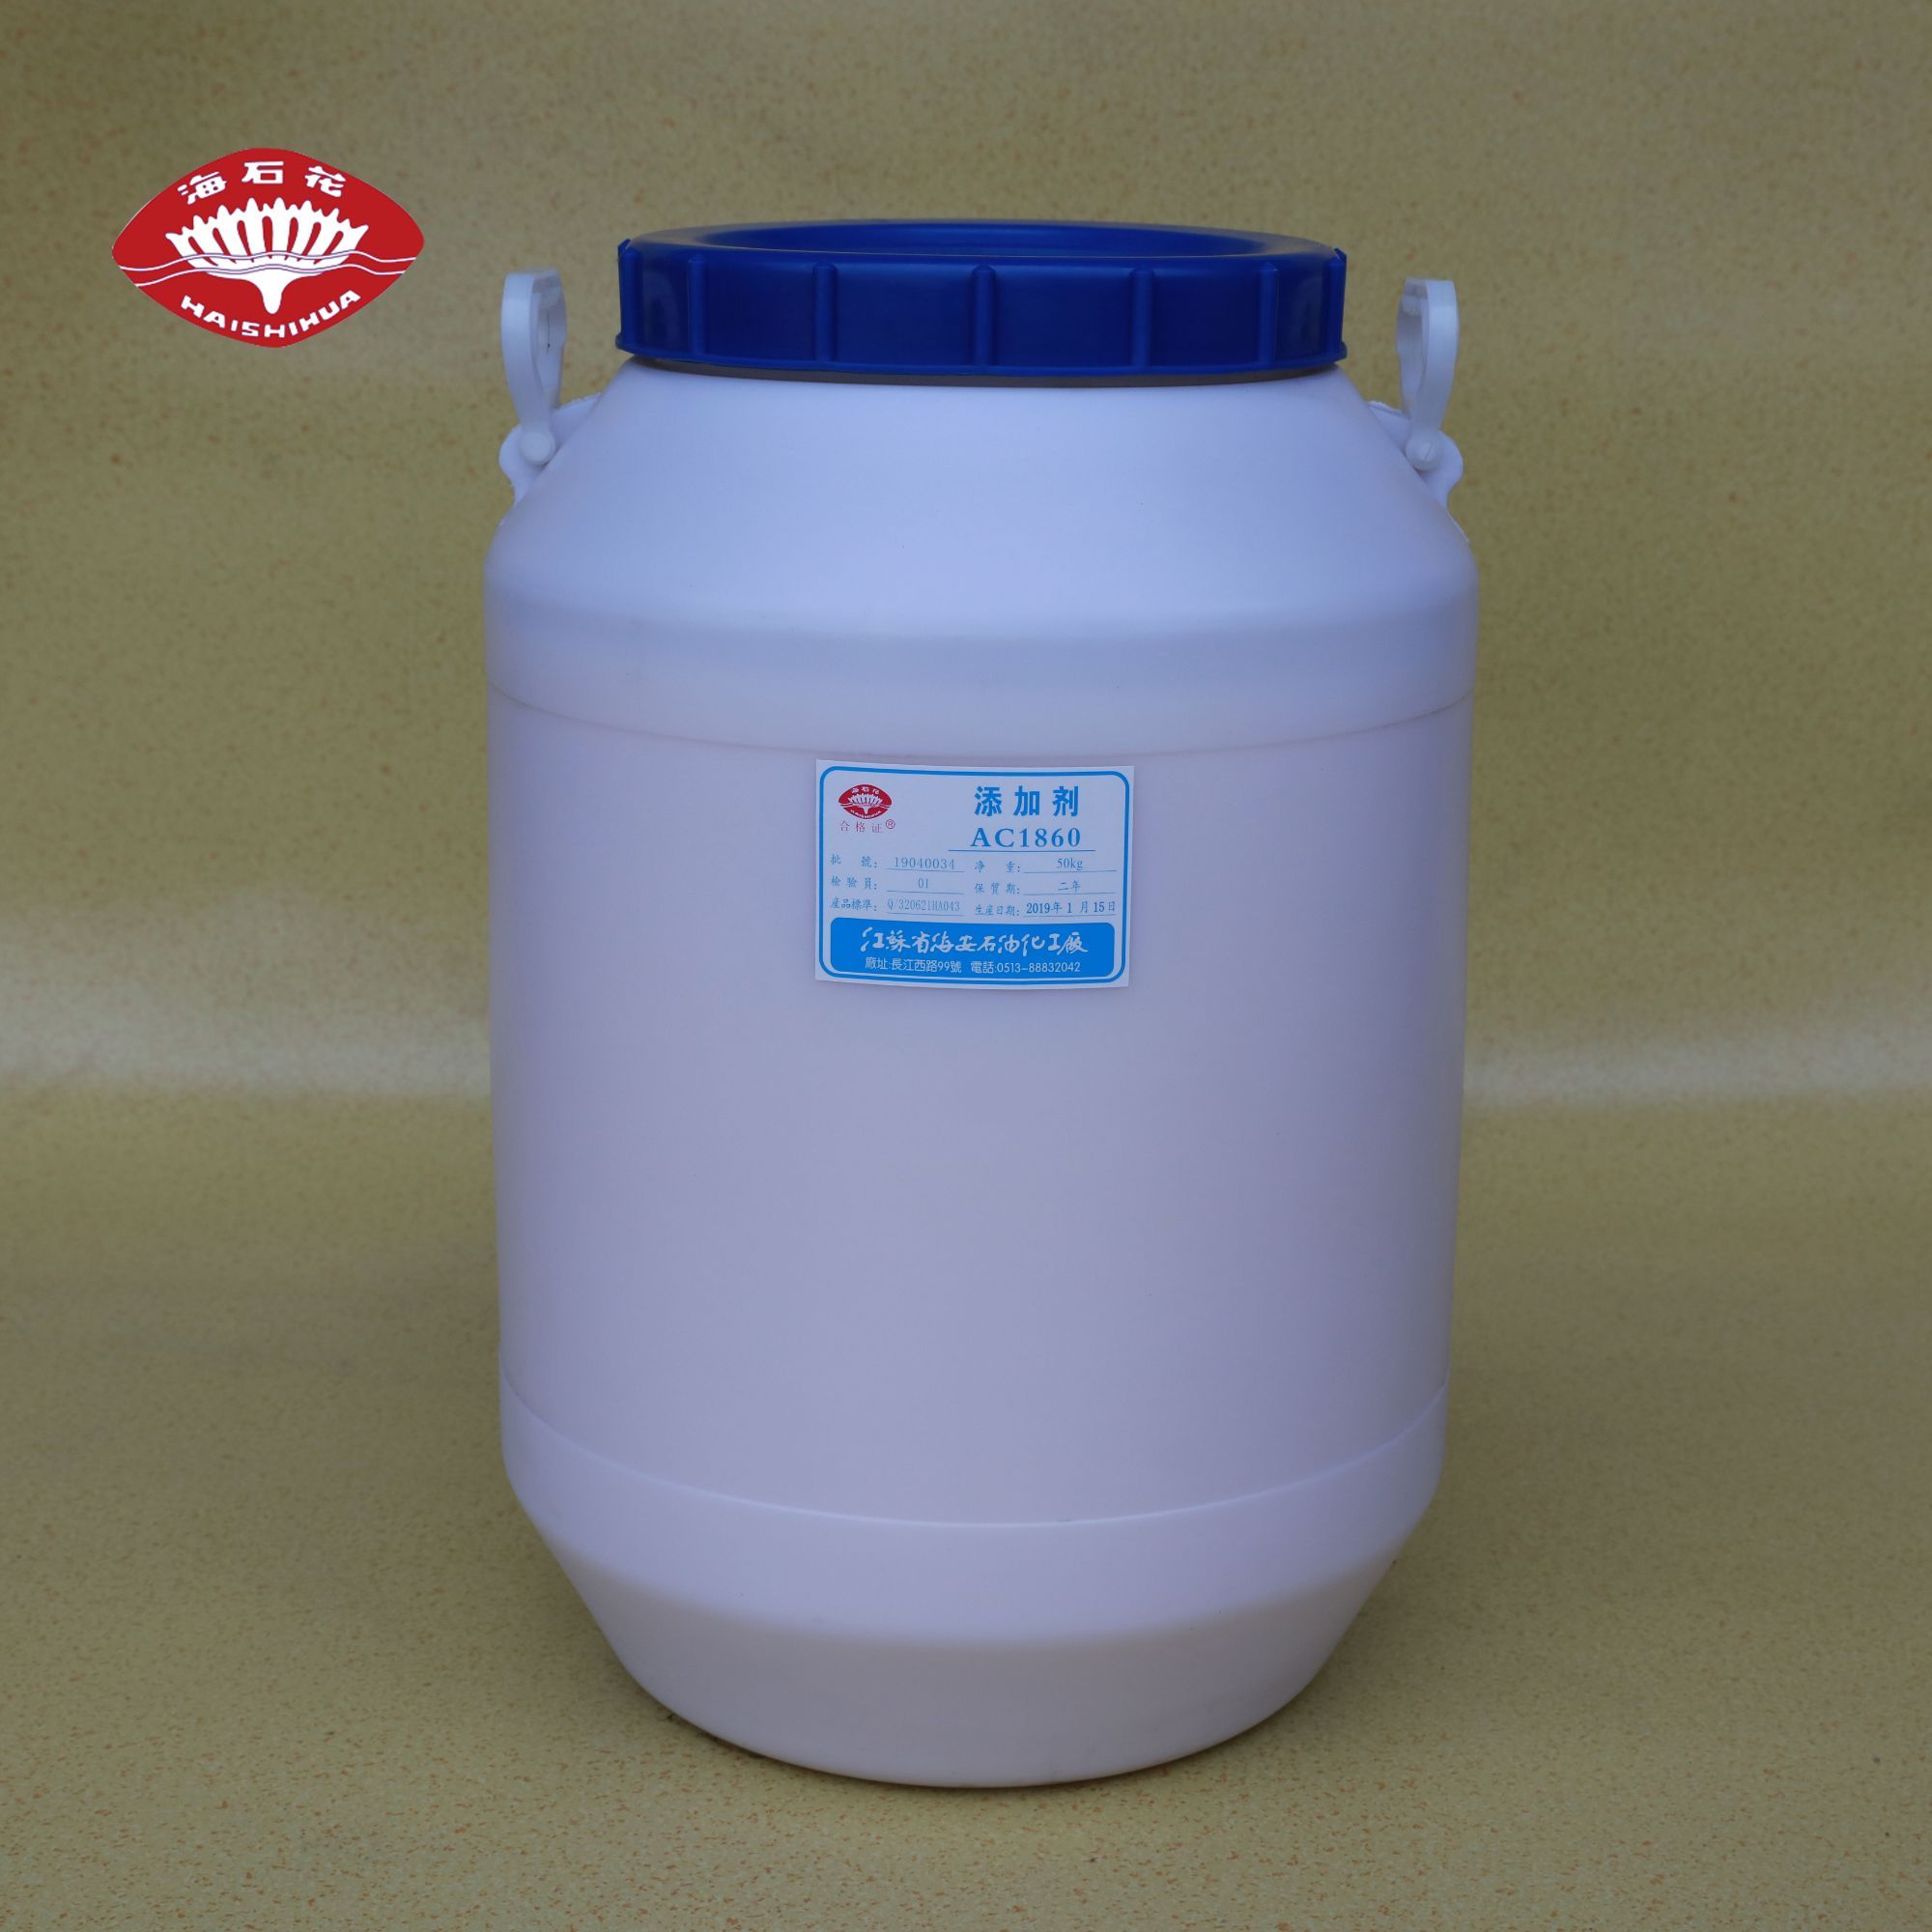 添加剂AC-1800系列 、十八胺聚氧乙烯醚